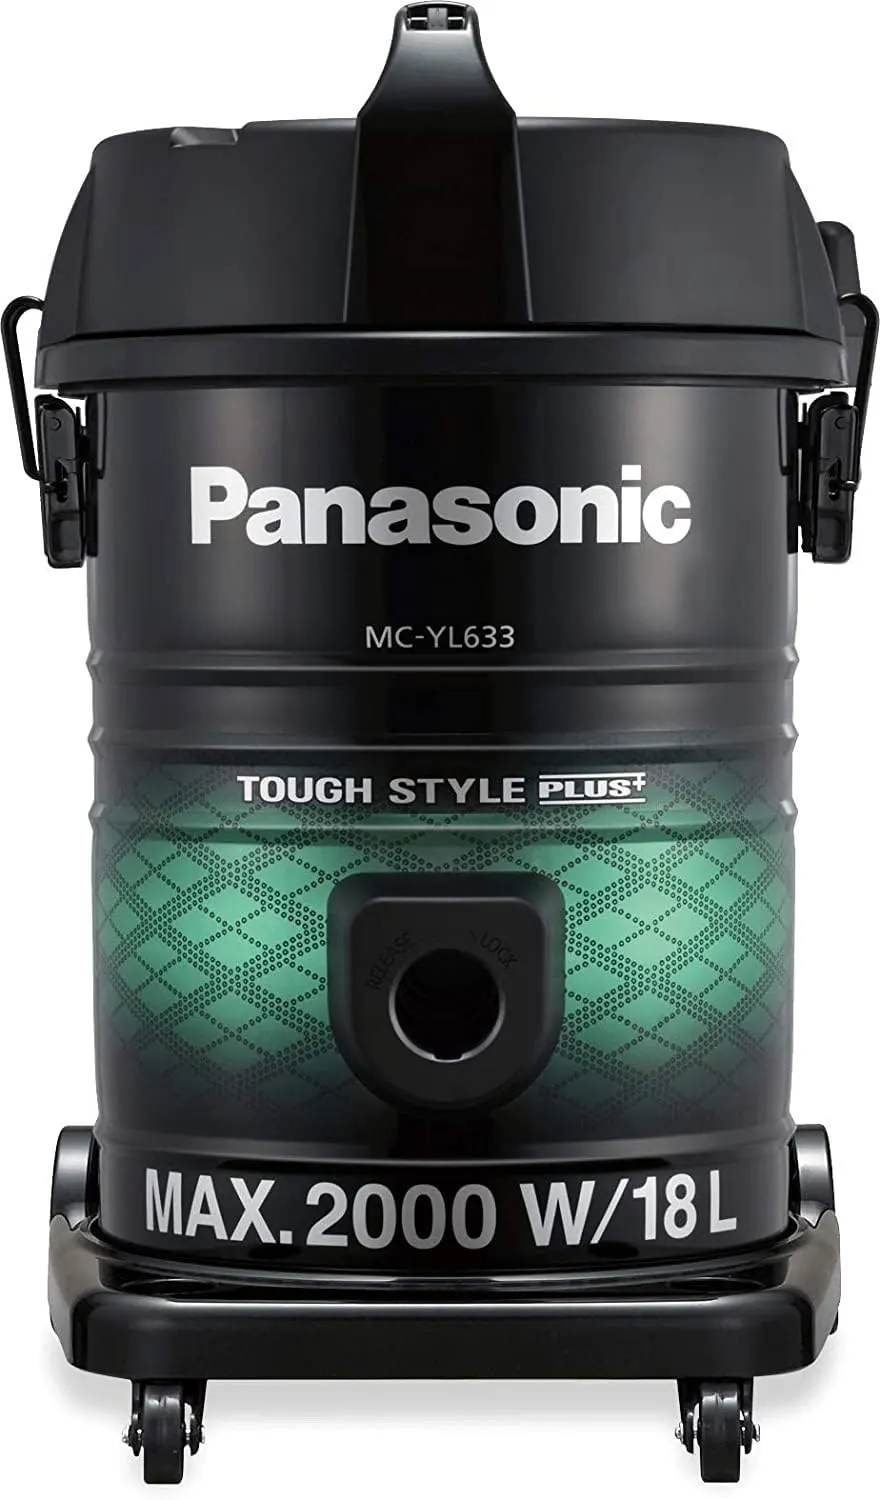 Panasonic Malaysian Vacuum Cleaner, 2000 Watt, 18 Liters, Black, MC-YL633